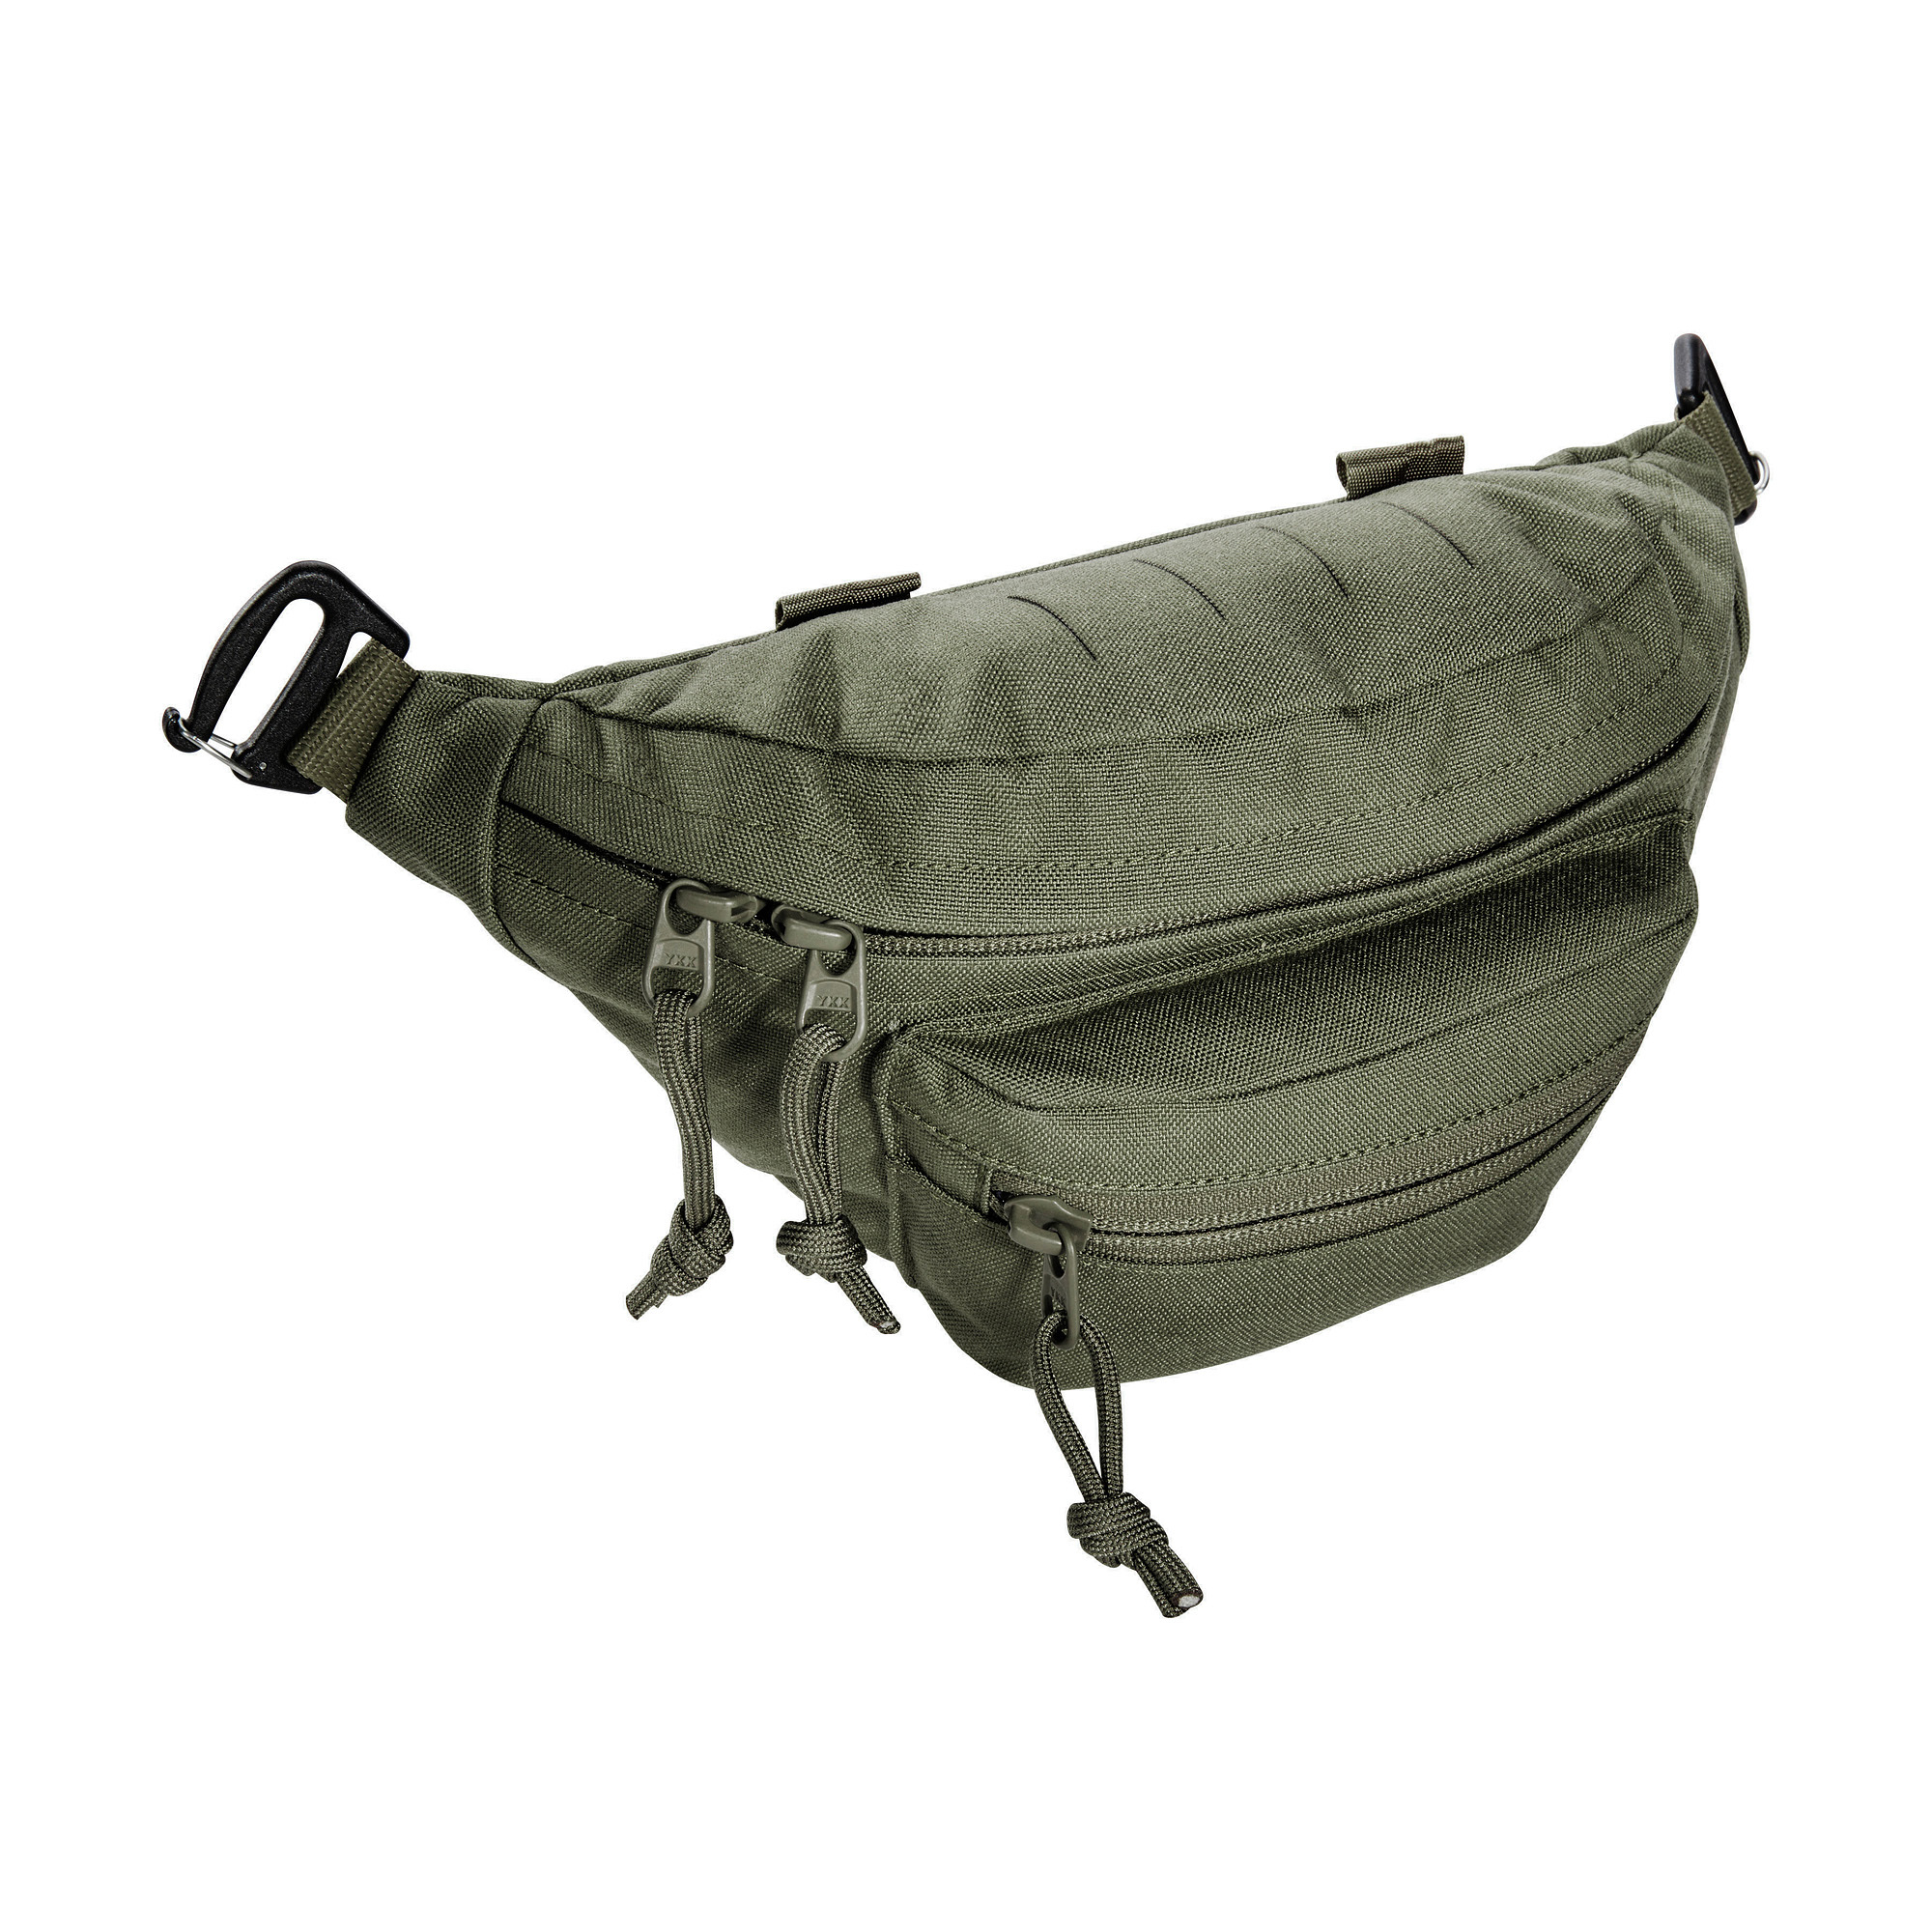 TT Modular Hip Bag - Bum Bag